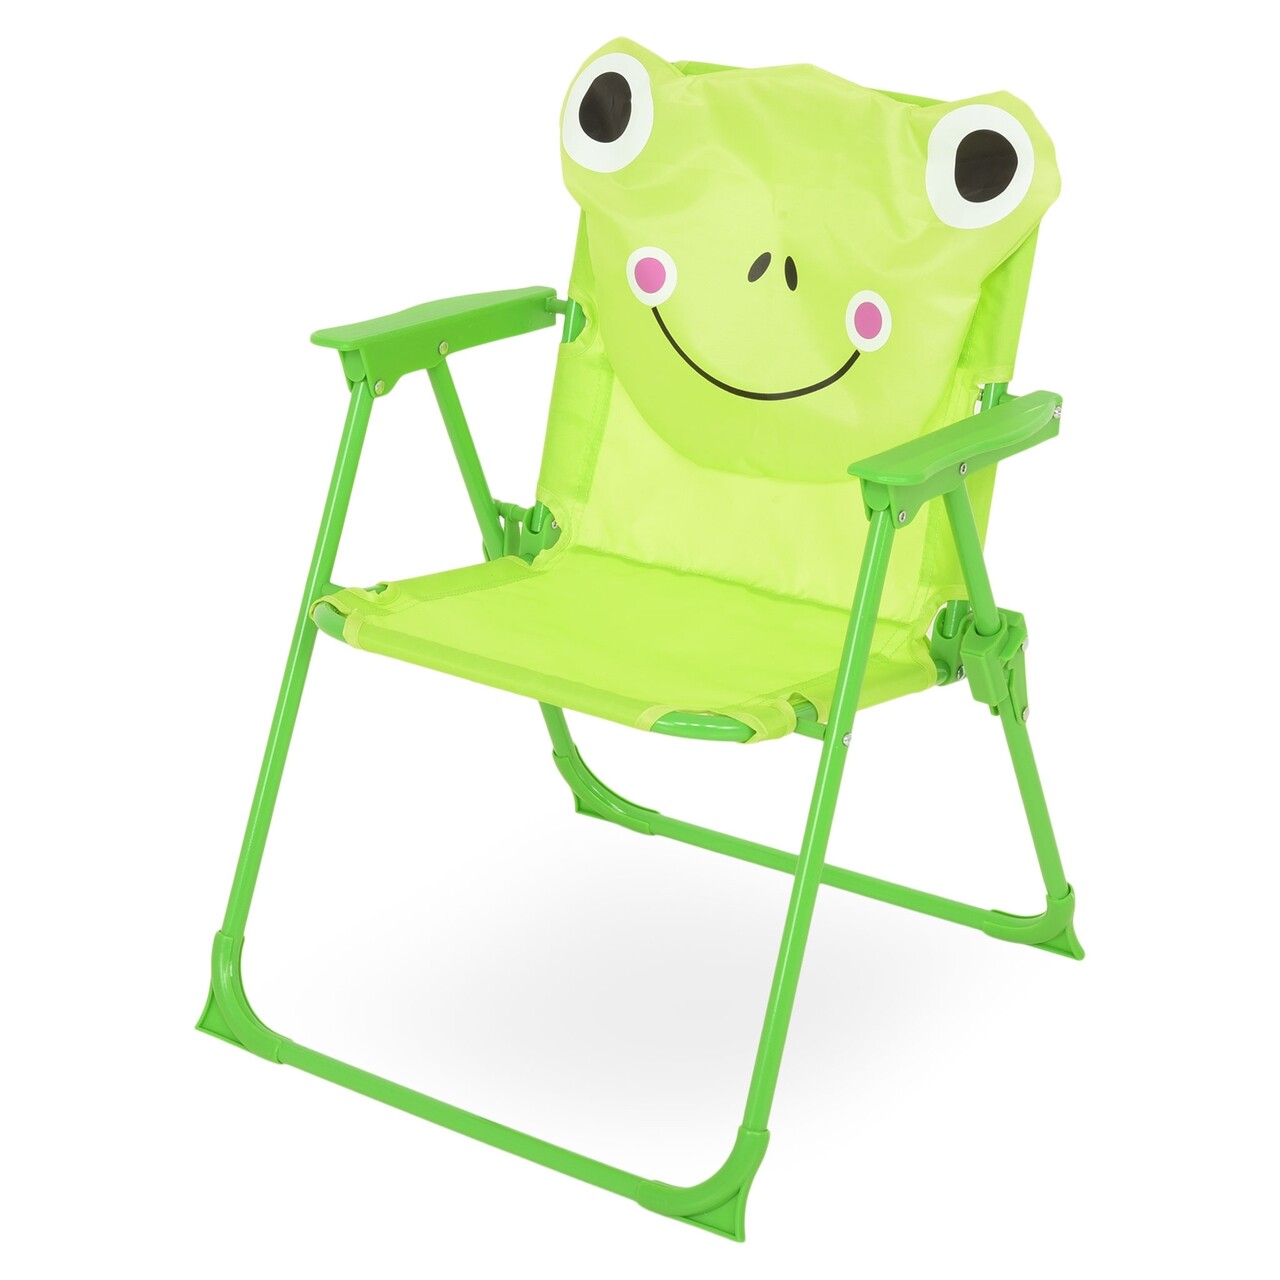 Frog Kerti Gyerekbútor Szett, 4 Darabos, Zöld